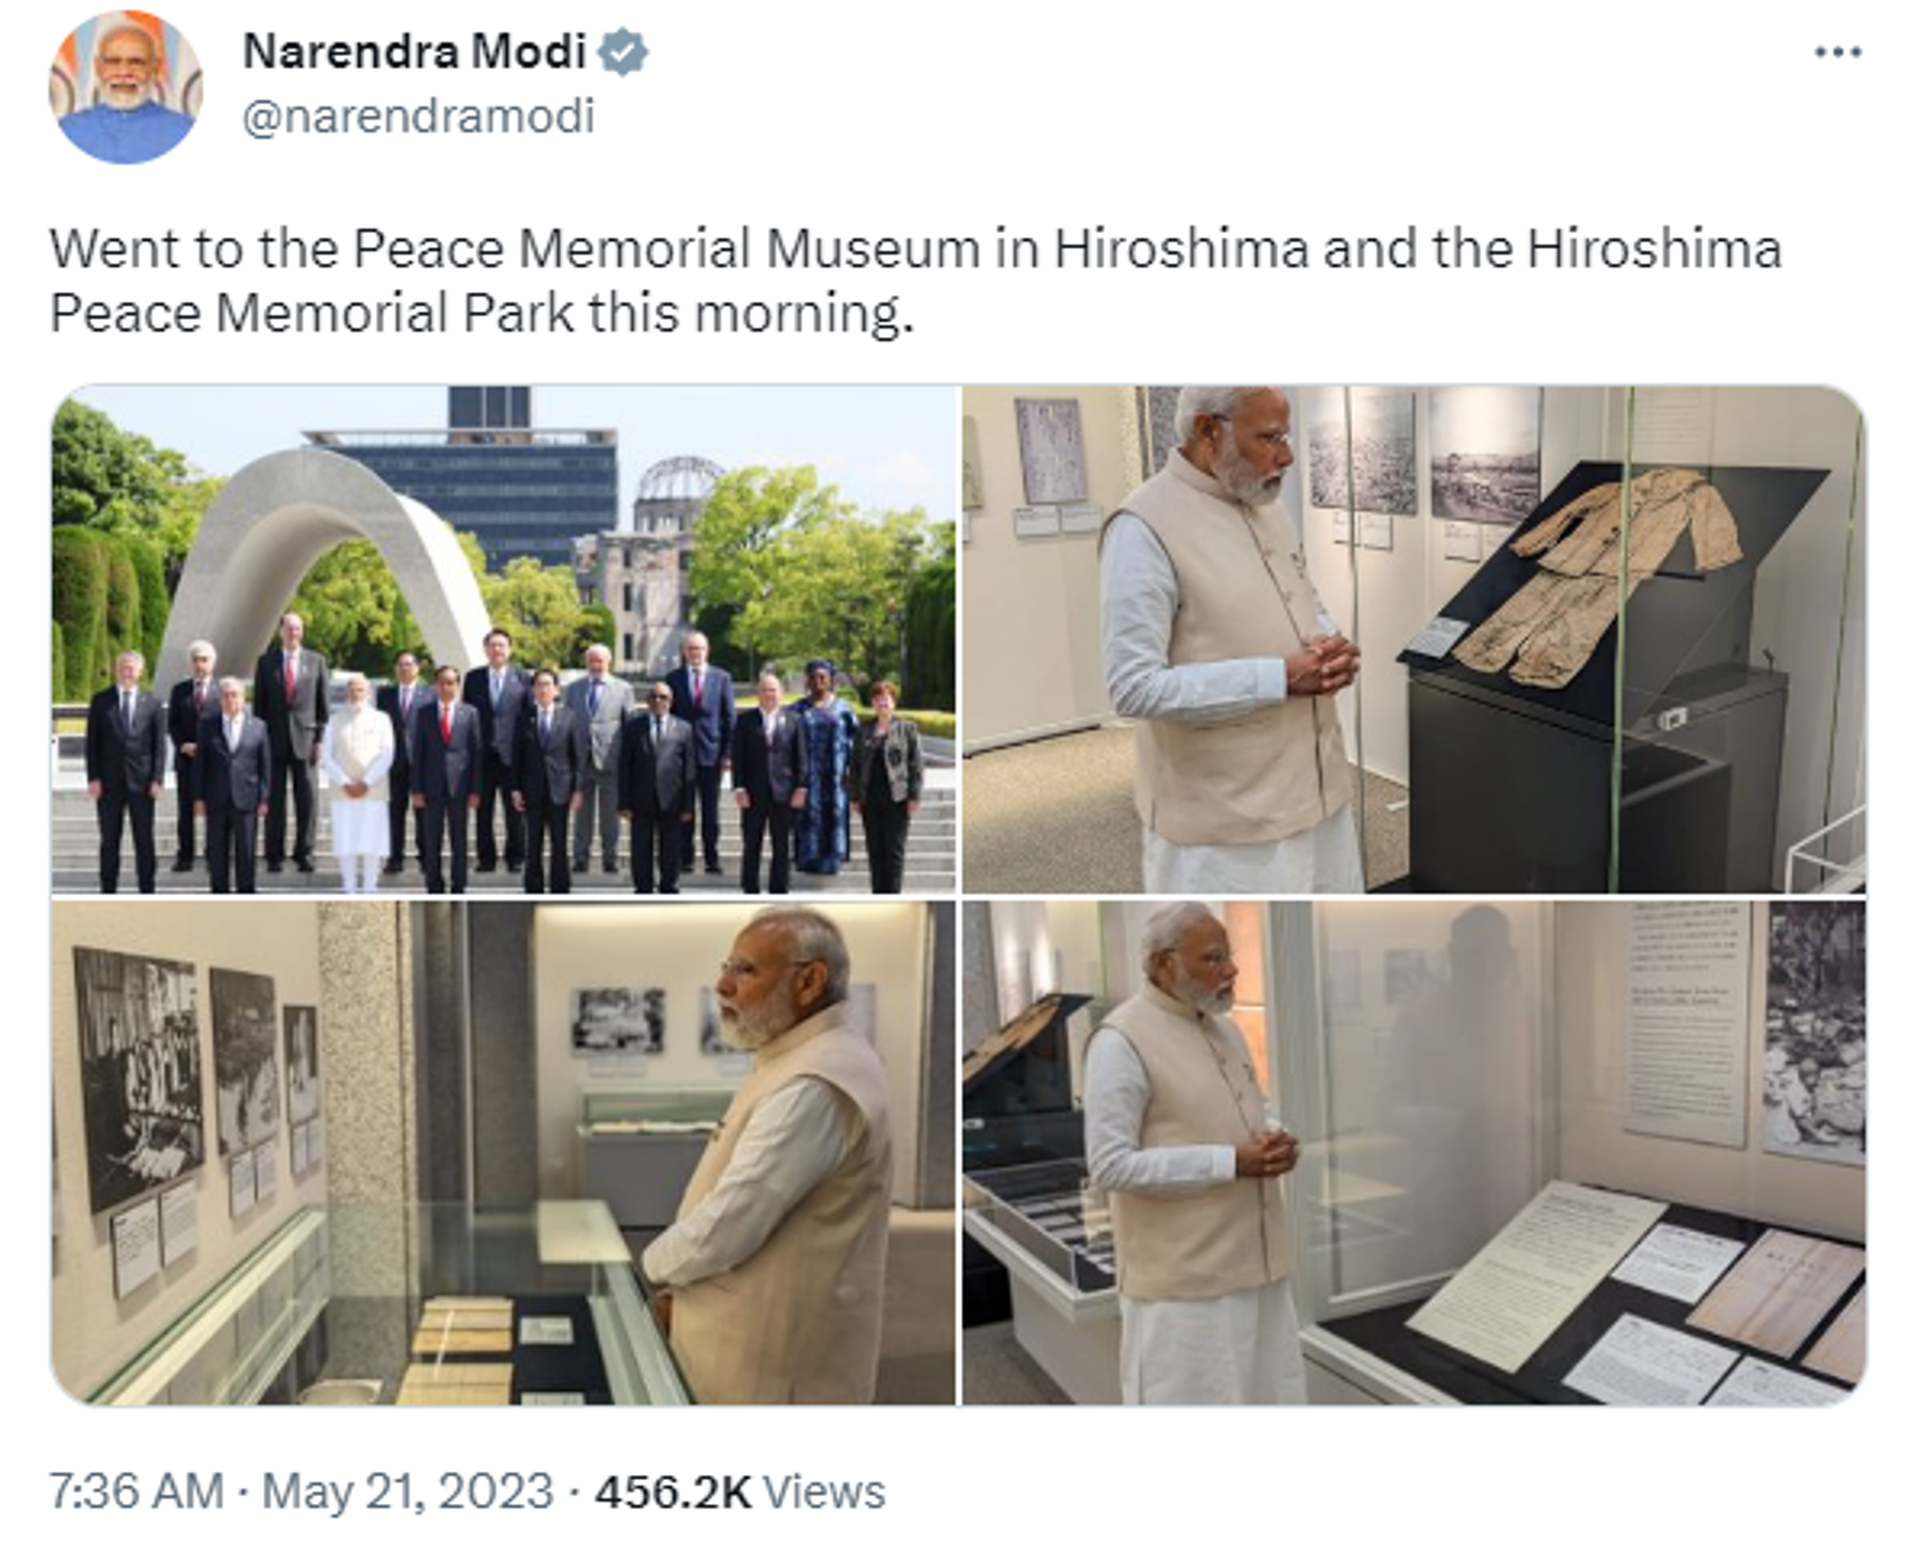 Prime Minister Narendra Modi Visited Peace Memorial Park in Hiroshima - Sputnik India, 1920, 21.05.2023